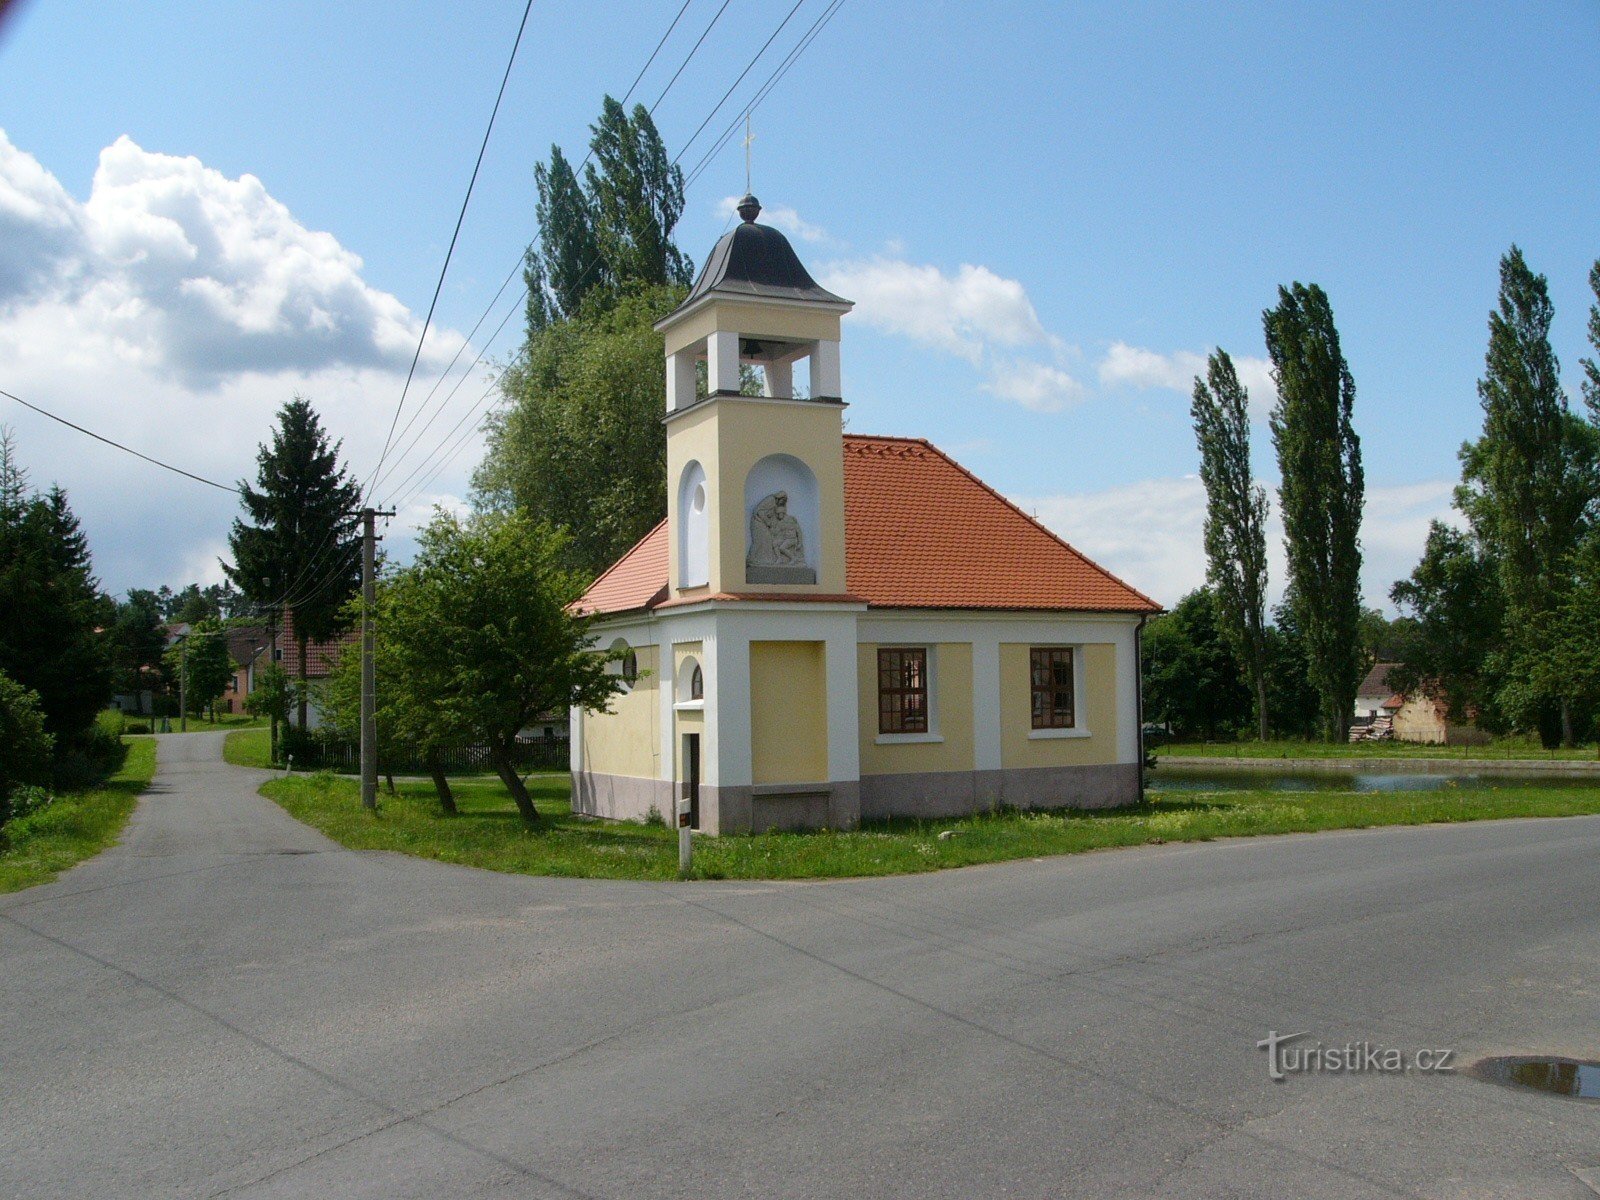 Nhà nguyện ở Čerňovice